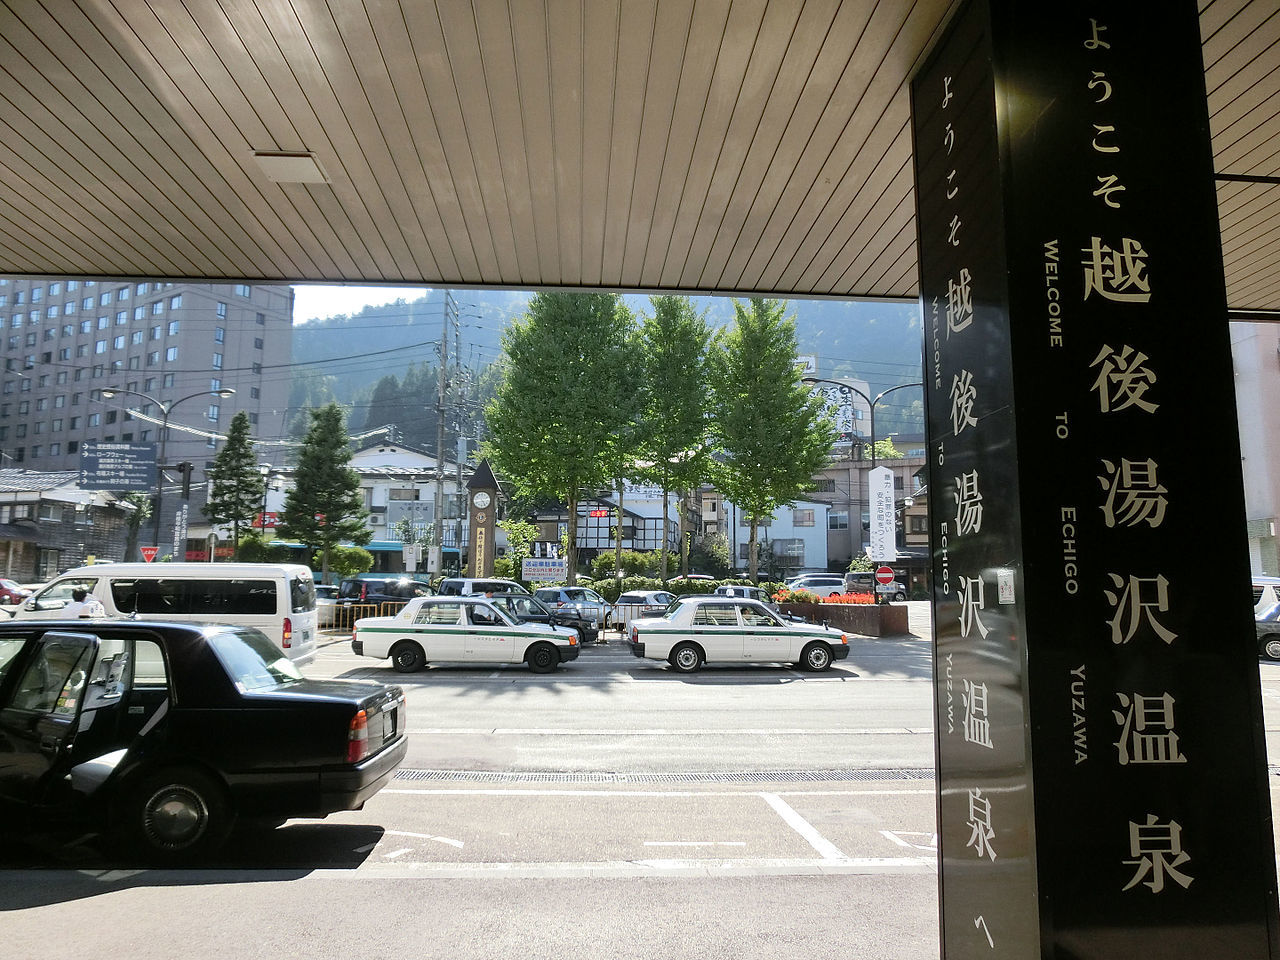 Entrance_to_Echigo-Yuzawa_Onsen.jpg